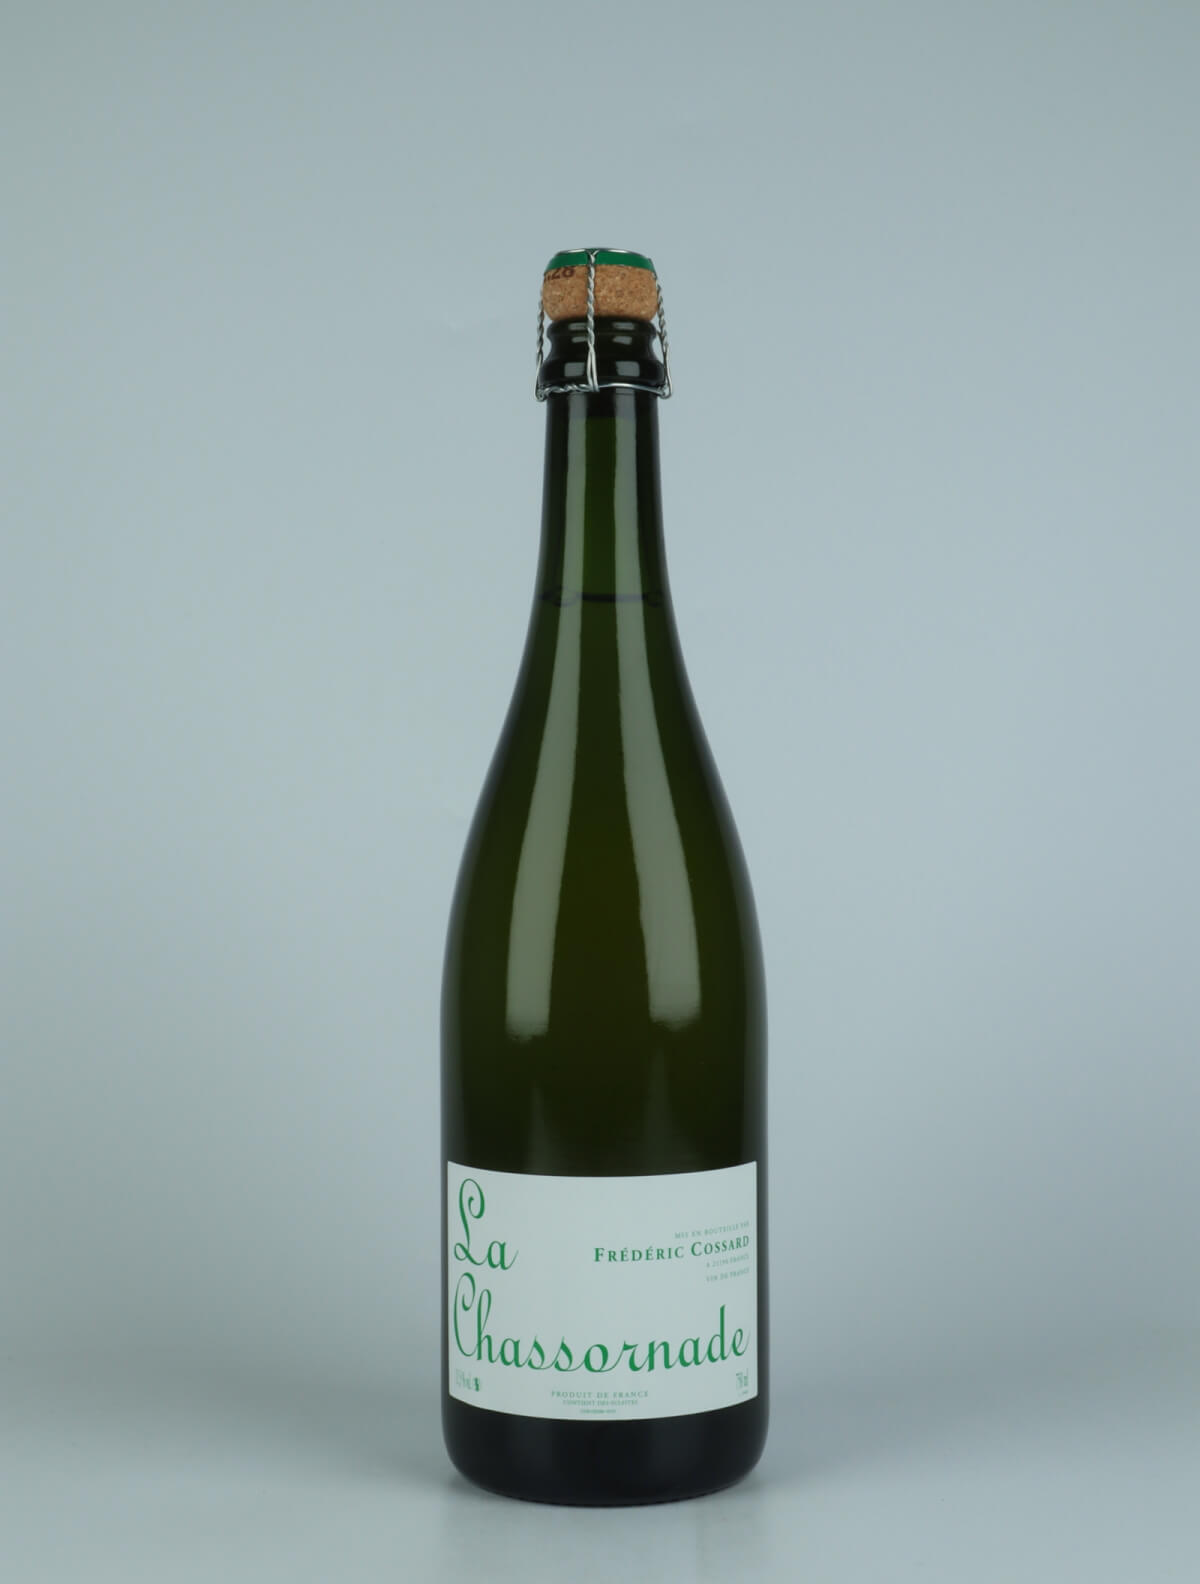 En flaske 2021 Chassornade Mousserende fra Frédéric Cossard, Bourgogne i Frankrig